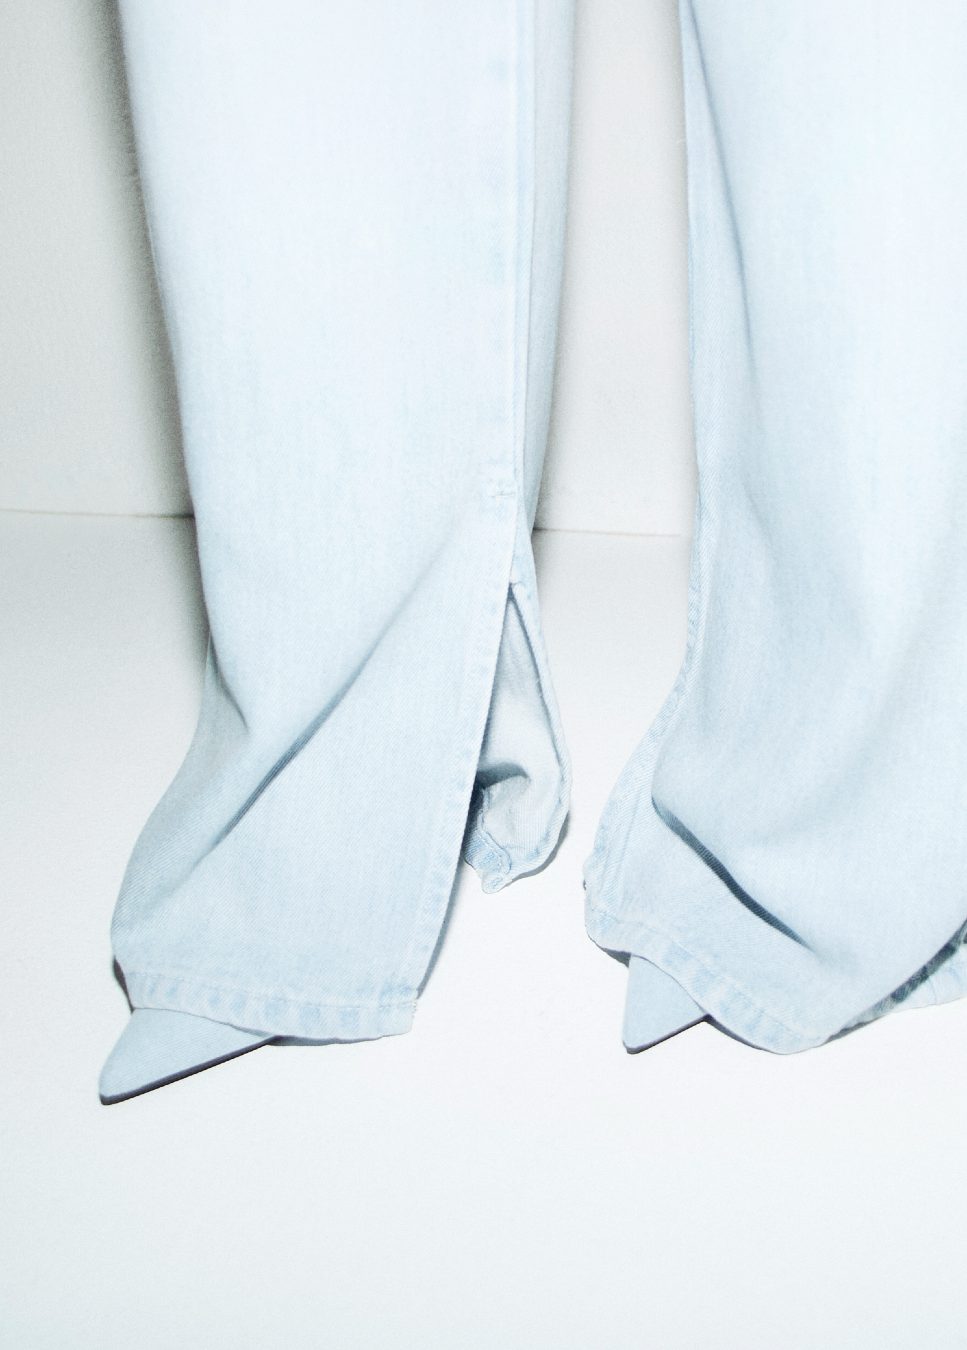 Shop de nieuwe collectie dames jeans, wide leg jeans, Homage jeans, bij online dameskleding Boetiek Aniek. De ‘Farrah Flowy Wide Leg Jeans With Slits’ van het merk Homage. De dames jeans zit hoog in de taille en heeft een losse pasvorm en loopt wijd uit naar beneden. De jeans heeft splitjes aan de onderkant. 